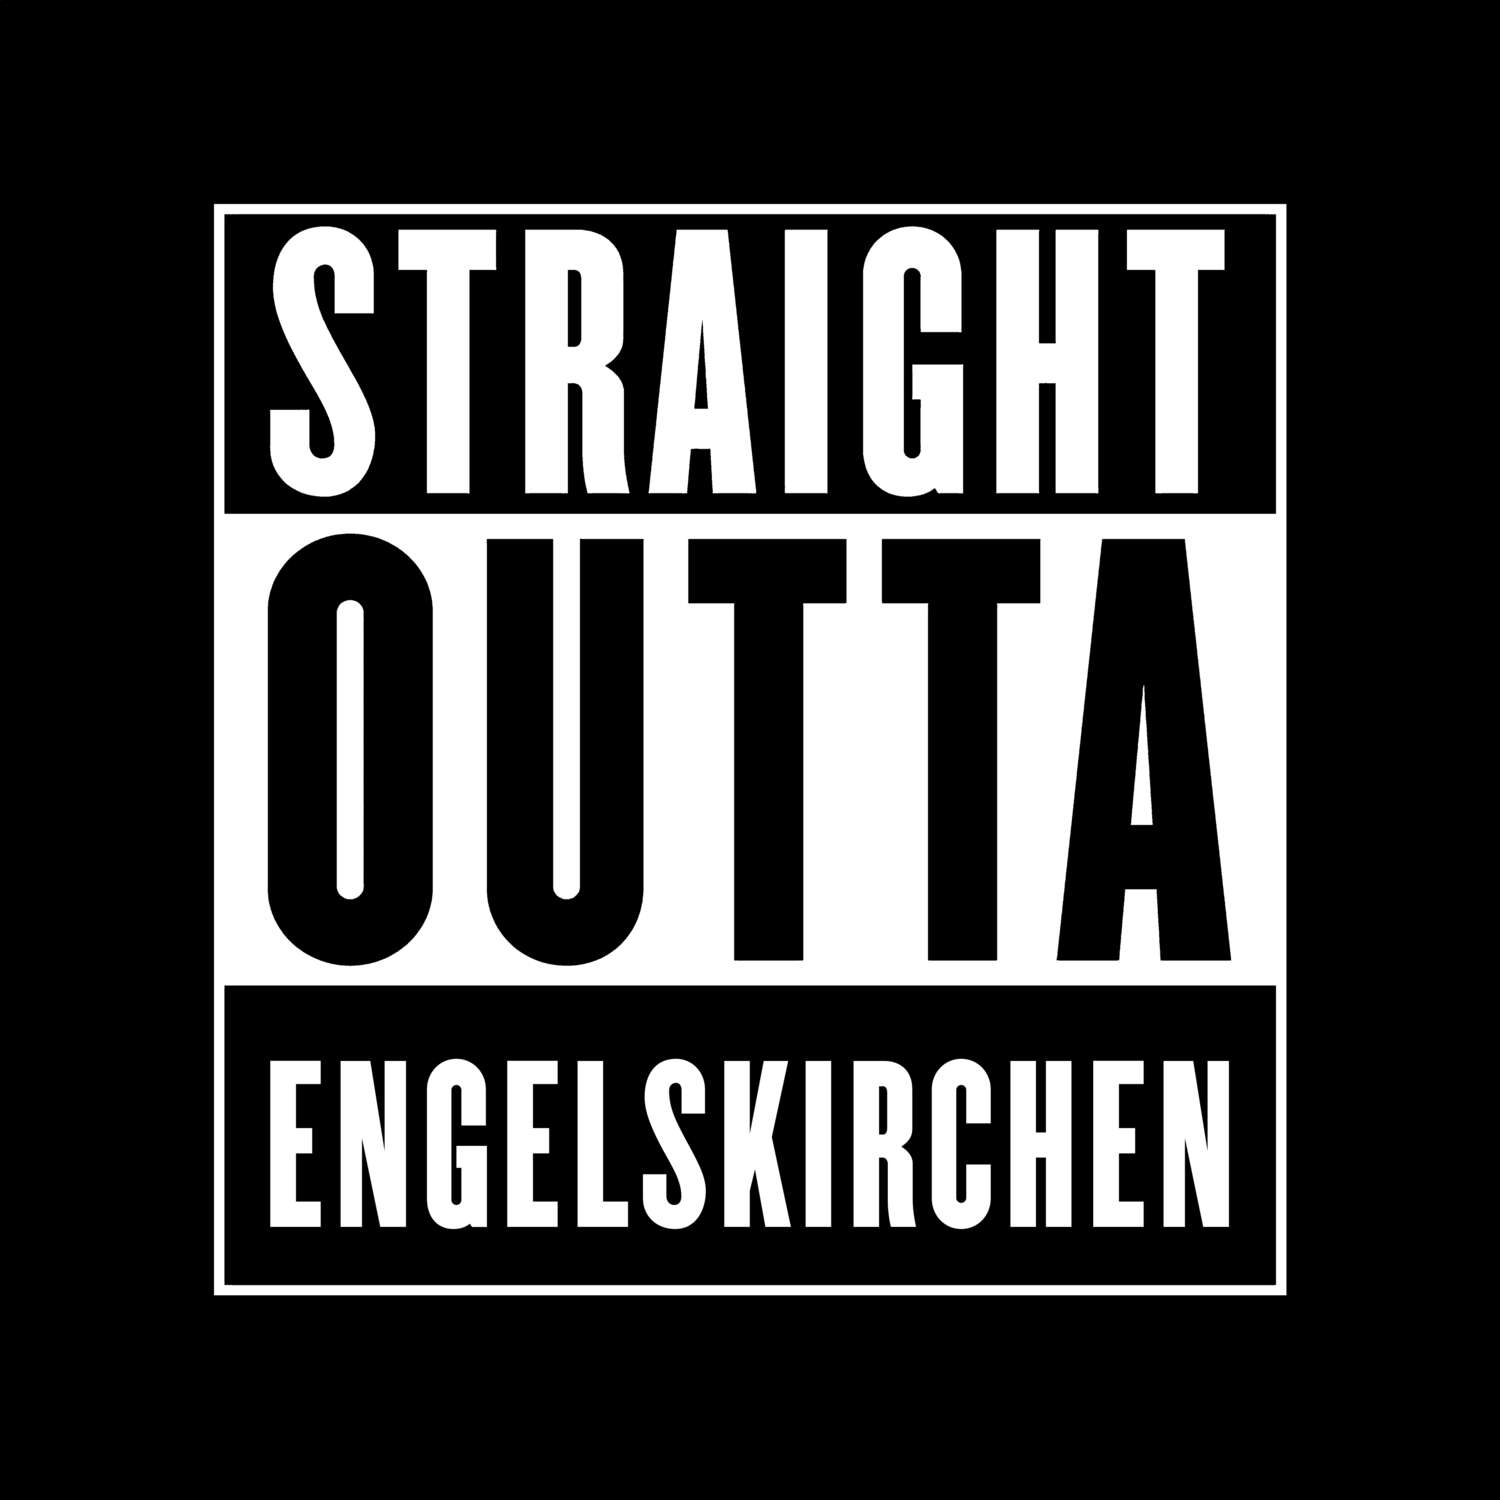 Engelskirchen T-Shirt »Straight Outta«